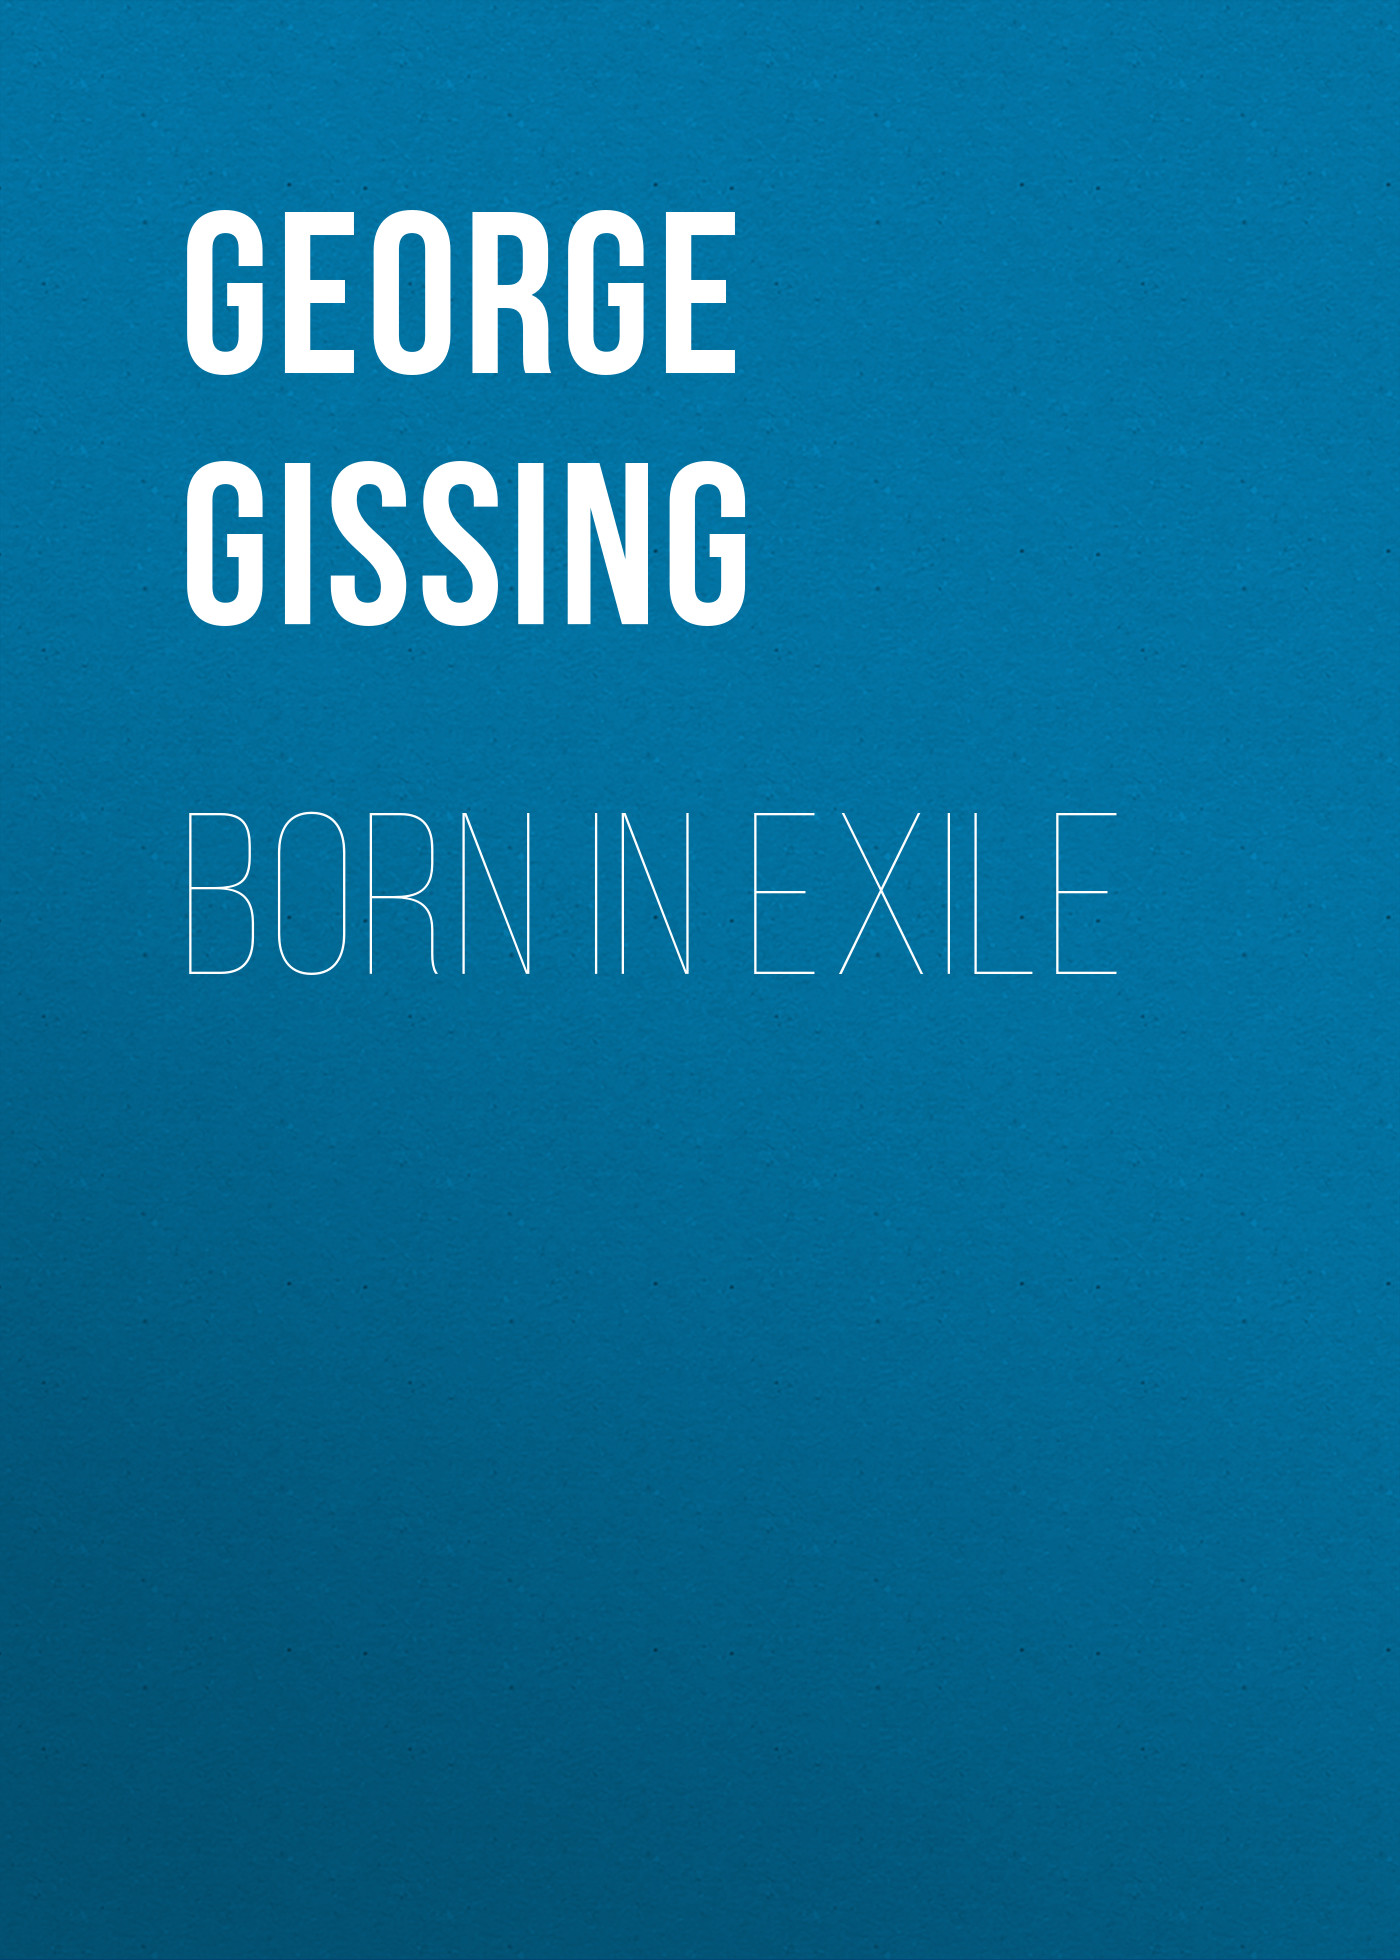 Книга Born in Exile из серии , созданная George Gissing, может относится к жанру Зарубежная классика, Литература 19 века, Зарубежная старинная литература. Стоимость электронной книги Born in Exile с идентификатором 38306857 составляет 0 руб.